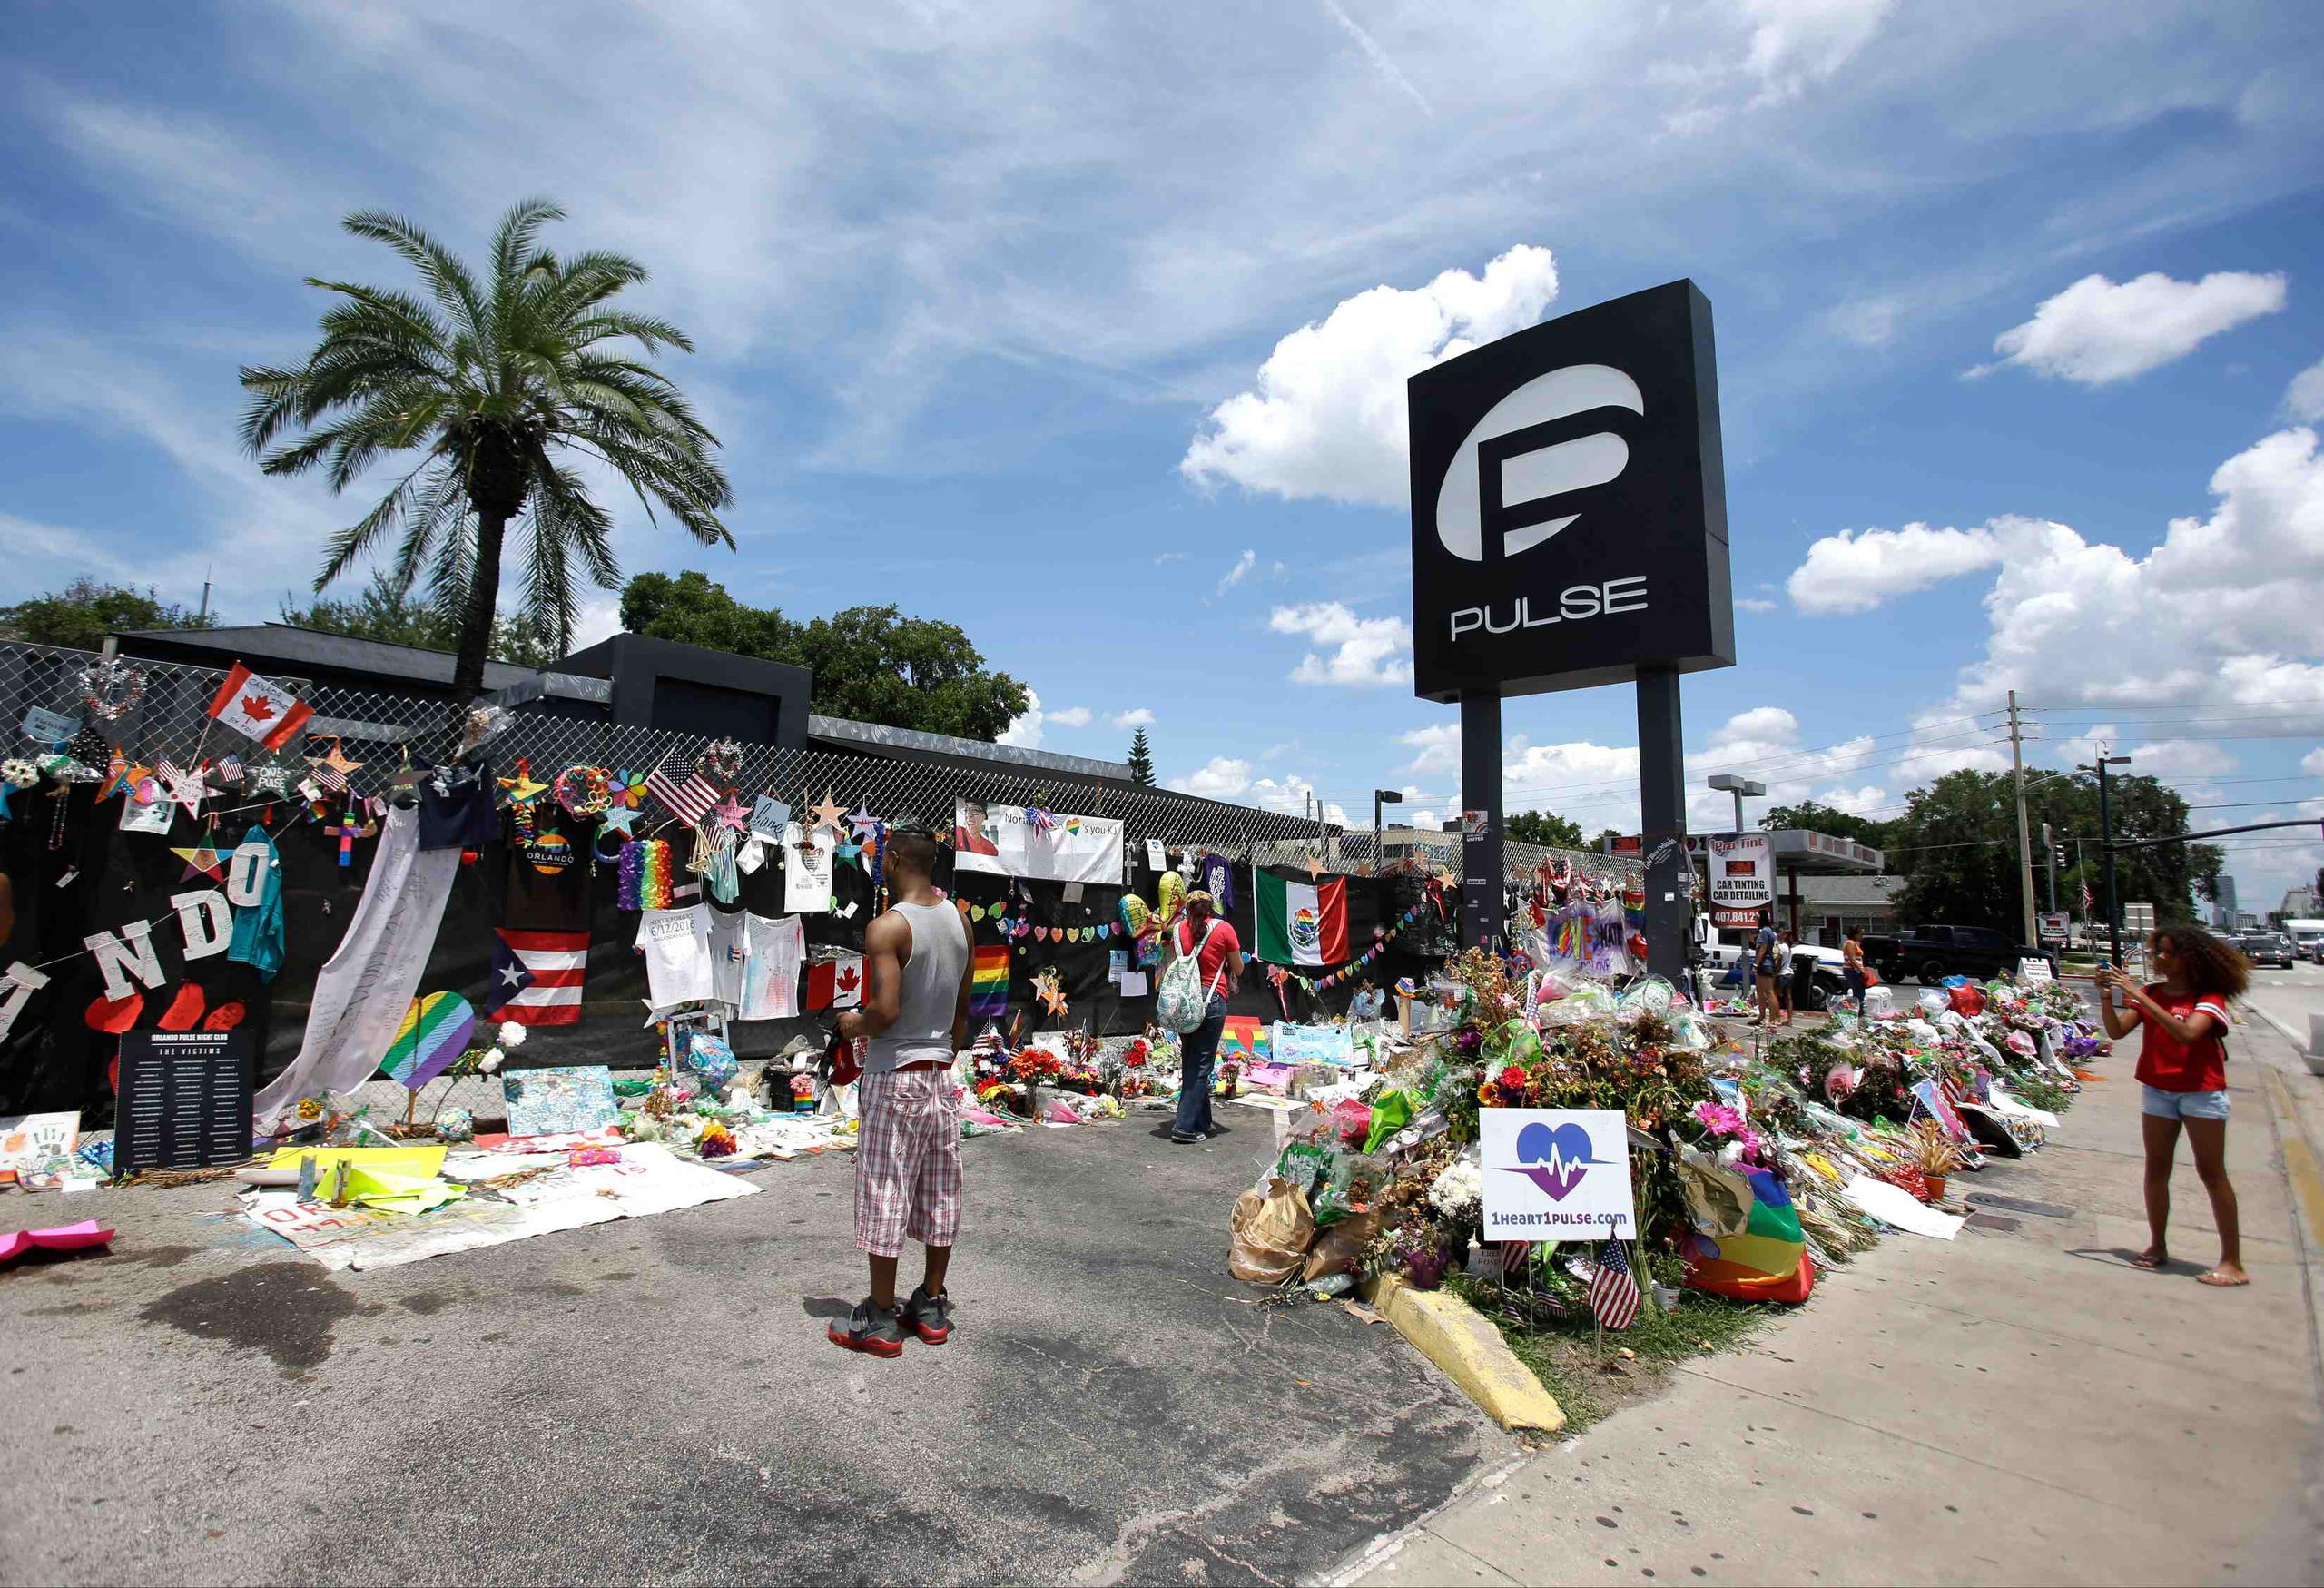 En el atentado perpetrado en la discoteca de ambiente gay Pulse por el estadounidense Omar Mateen, de 29 años y origen afgano, murieron 49 personas y otras 53 resultaron heridas por impactos de bala. (Archivo/AP)